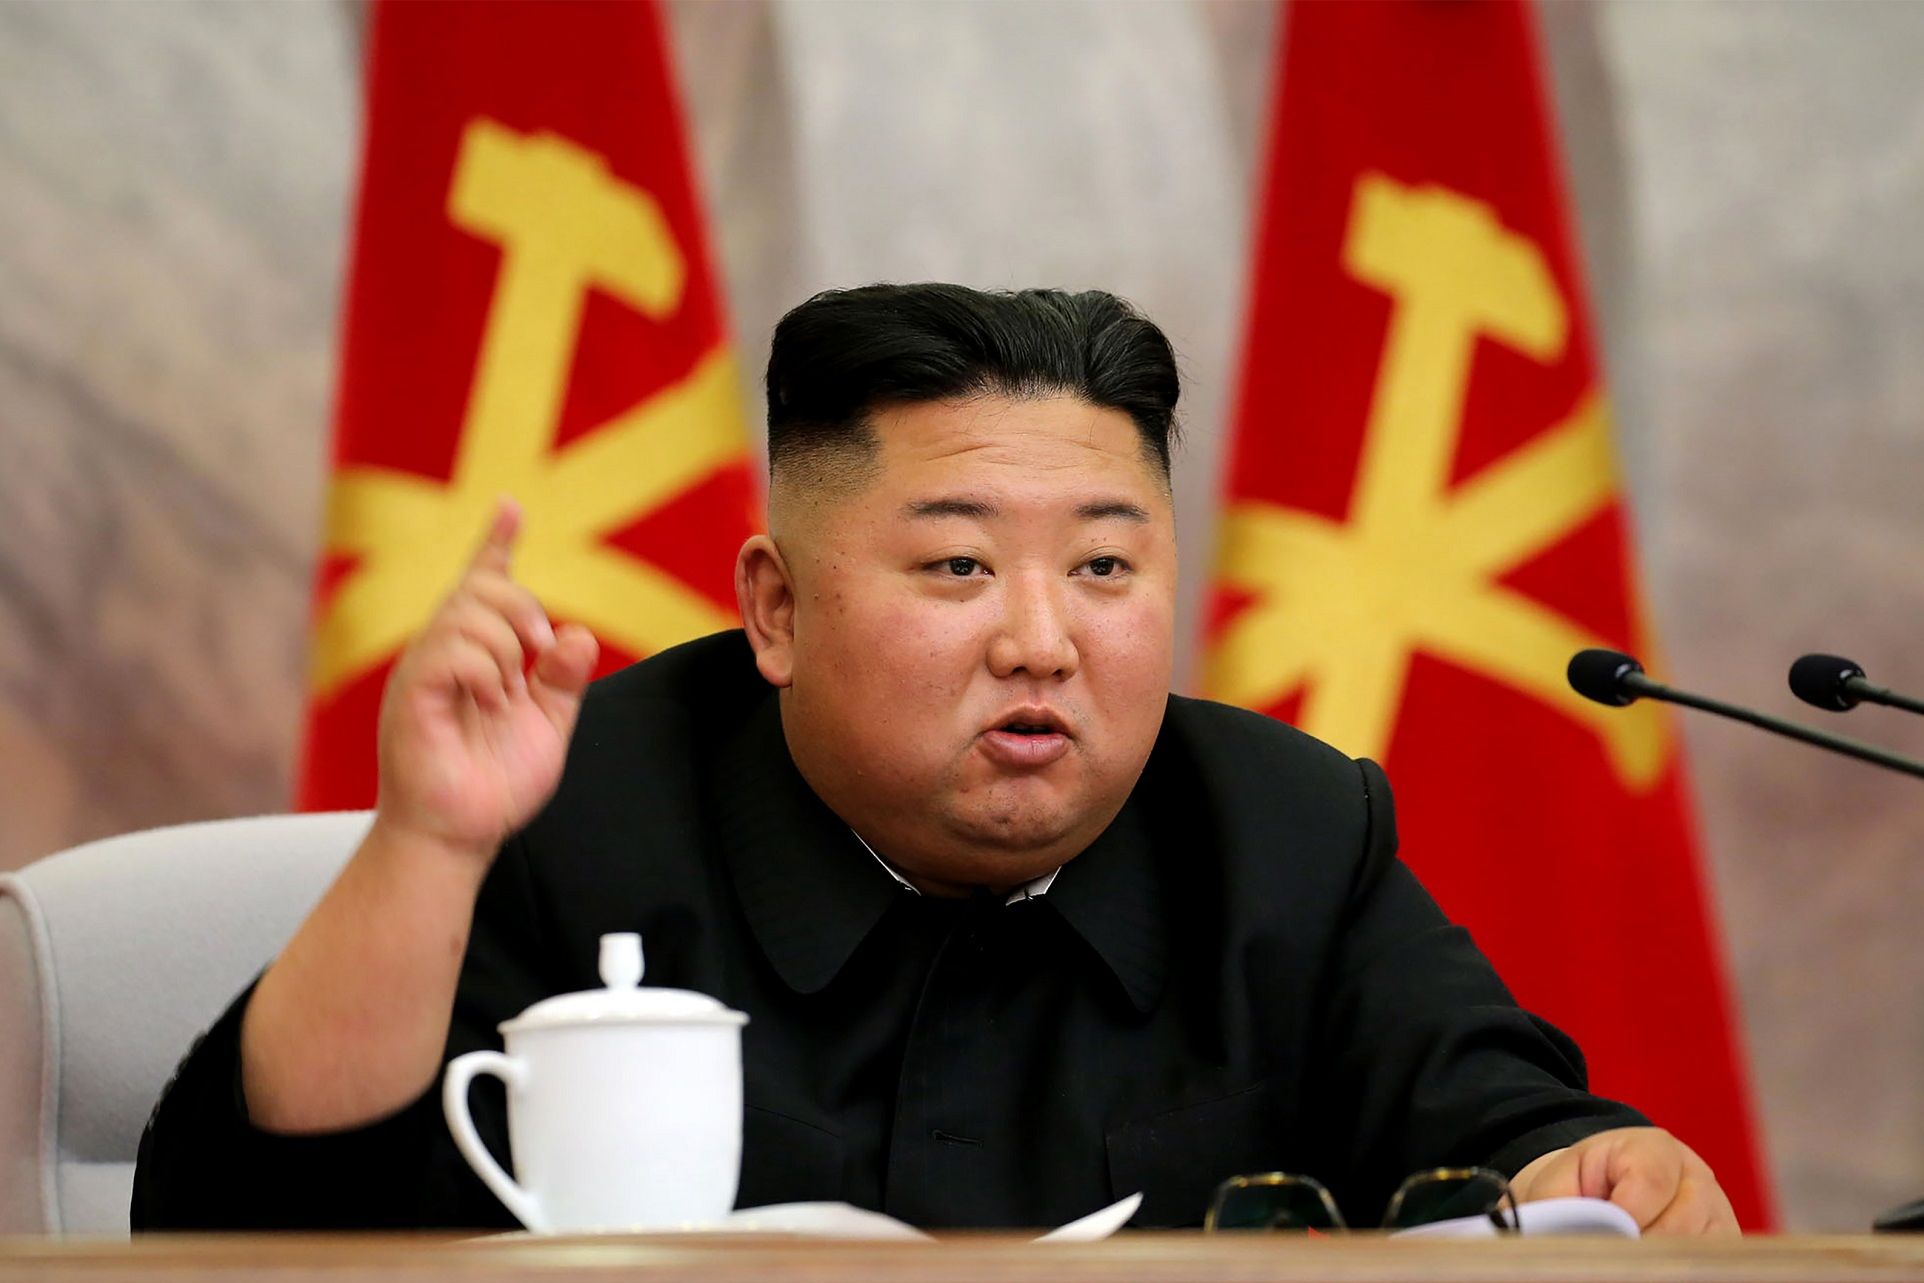 Kim Jong Un Kirim Kode Rahasia untuk Mata-mata Lewat YouTube, Pakar Teknologi: Itu Hoaks